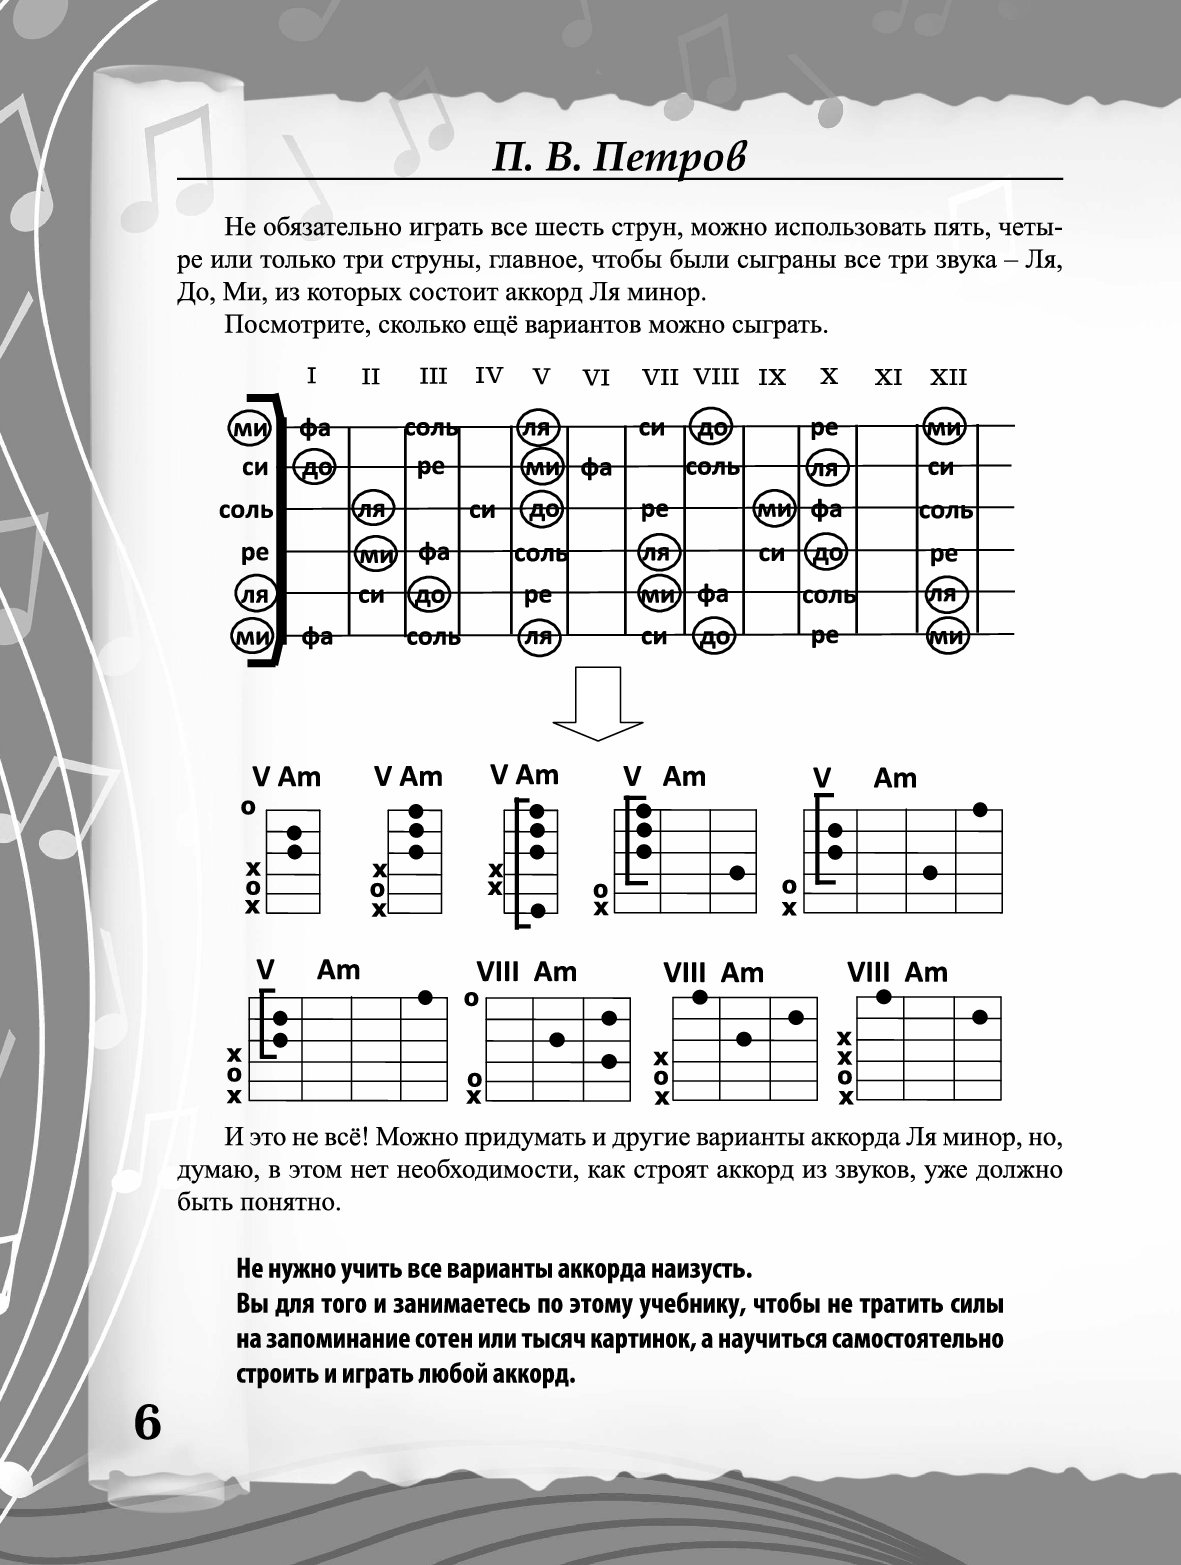 Аккорды для начинающих учить. Аккорды на гитаре на 6 струнной гитаре. Аккорды для гитары для начинающих 6 струн. Простые аккорды на гитаре для начинающих 6 струн. Таблица аккордов для гитары 6 струн для начинающих.